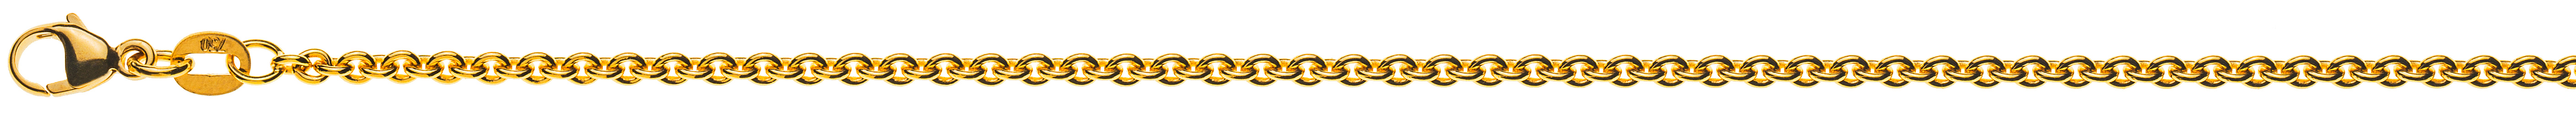 AURONOS Prestige Halskette Gelbgold 18K Rundanker 40cm 2.3mm